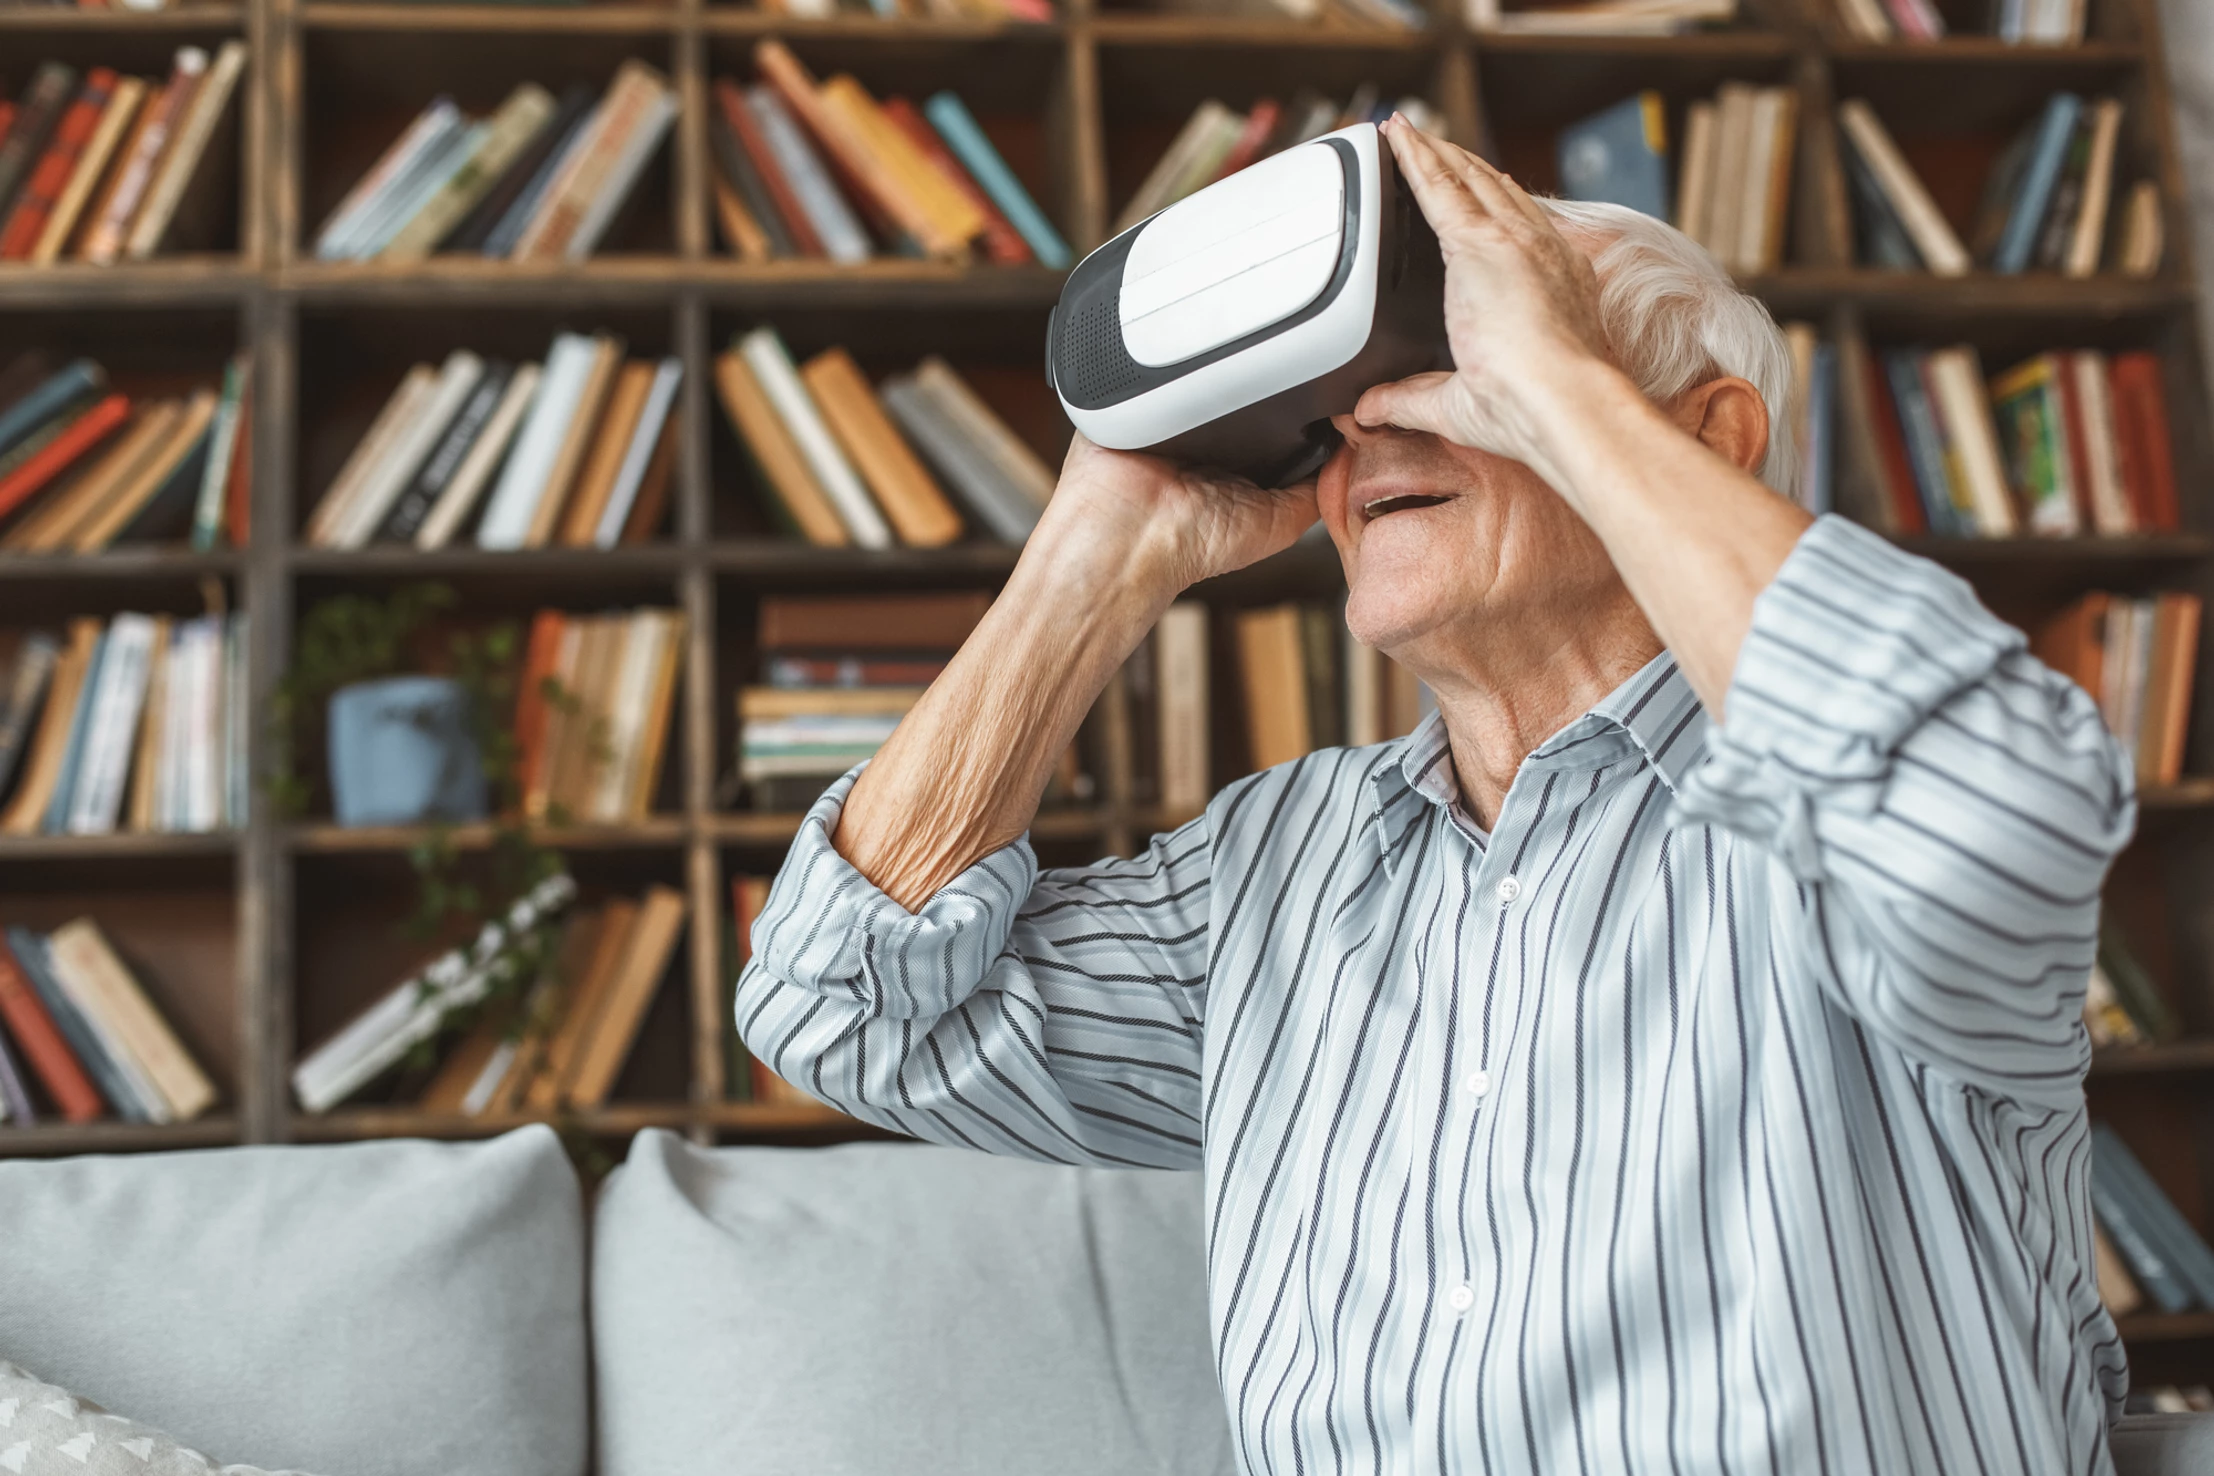 La réalité virtuelle au service du bien-être